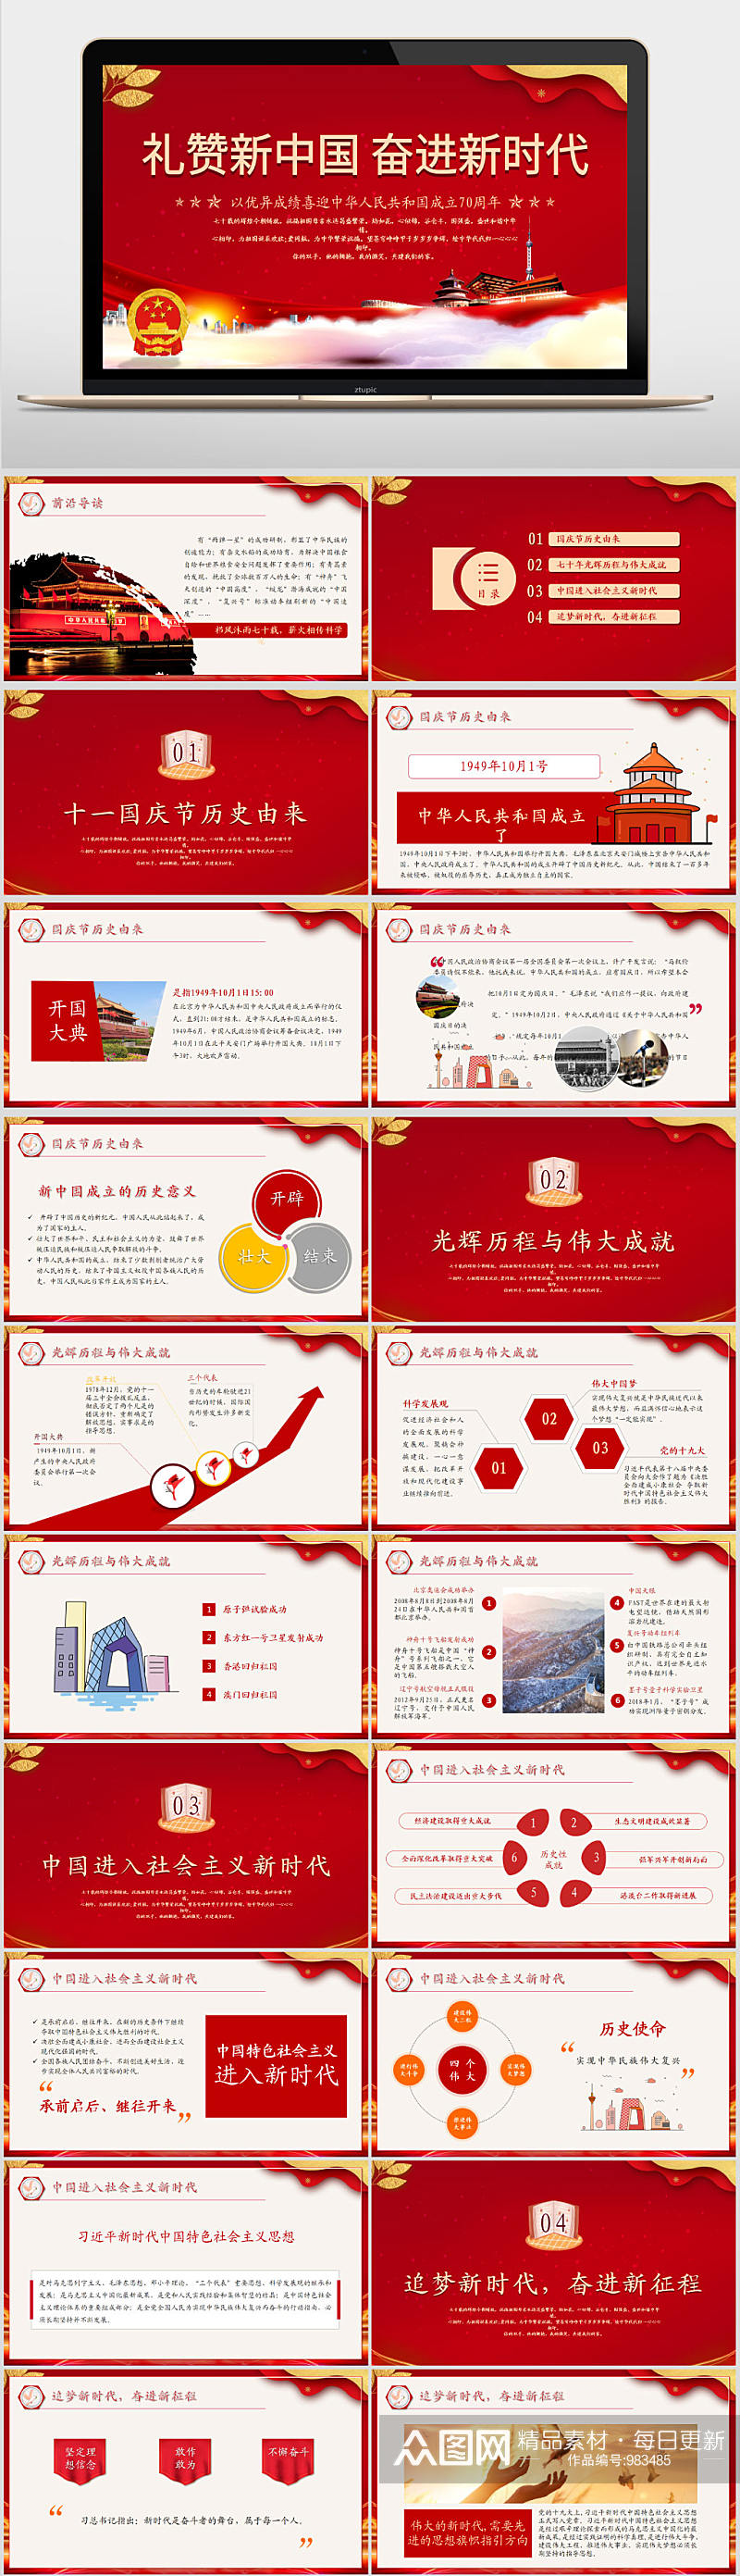 盛世华诞纪念新中国成立70周年PPT模板素材